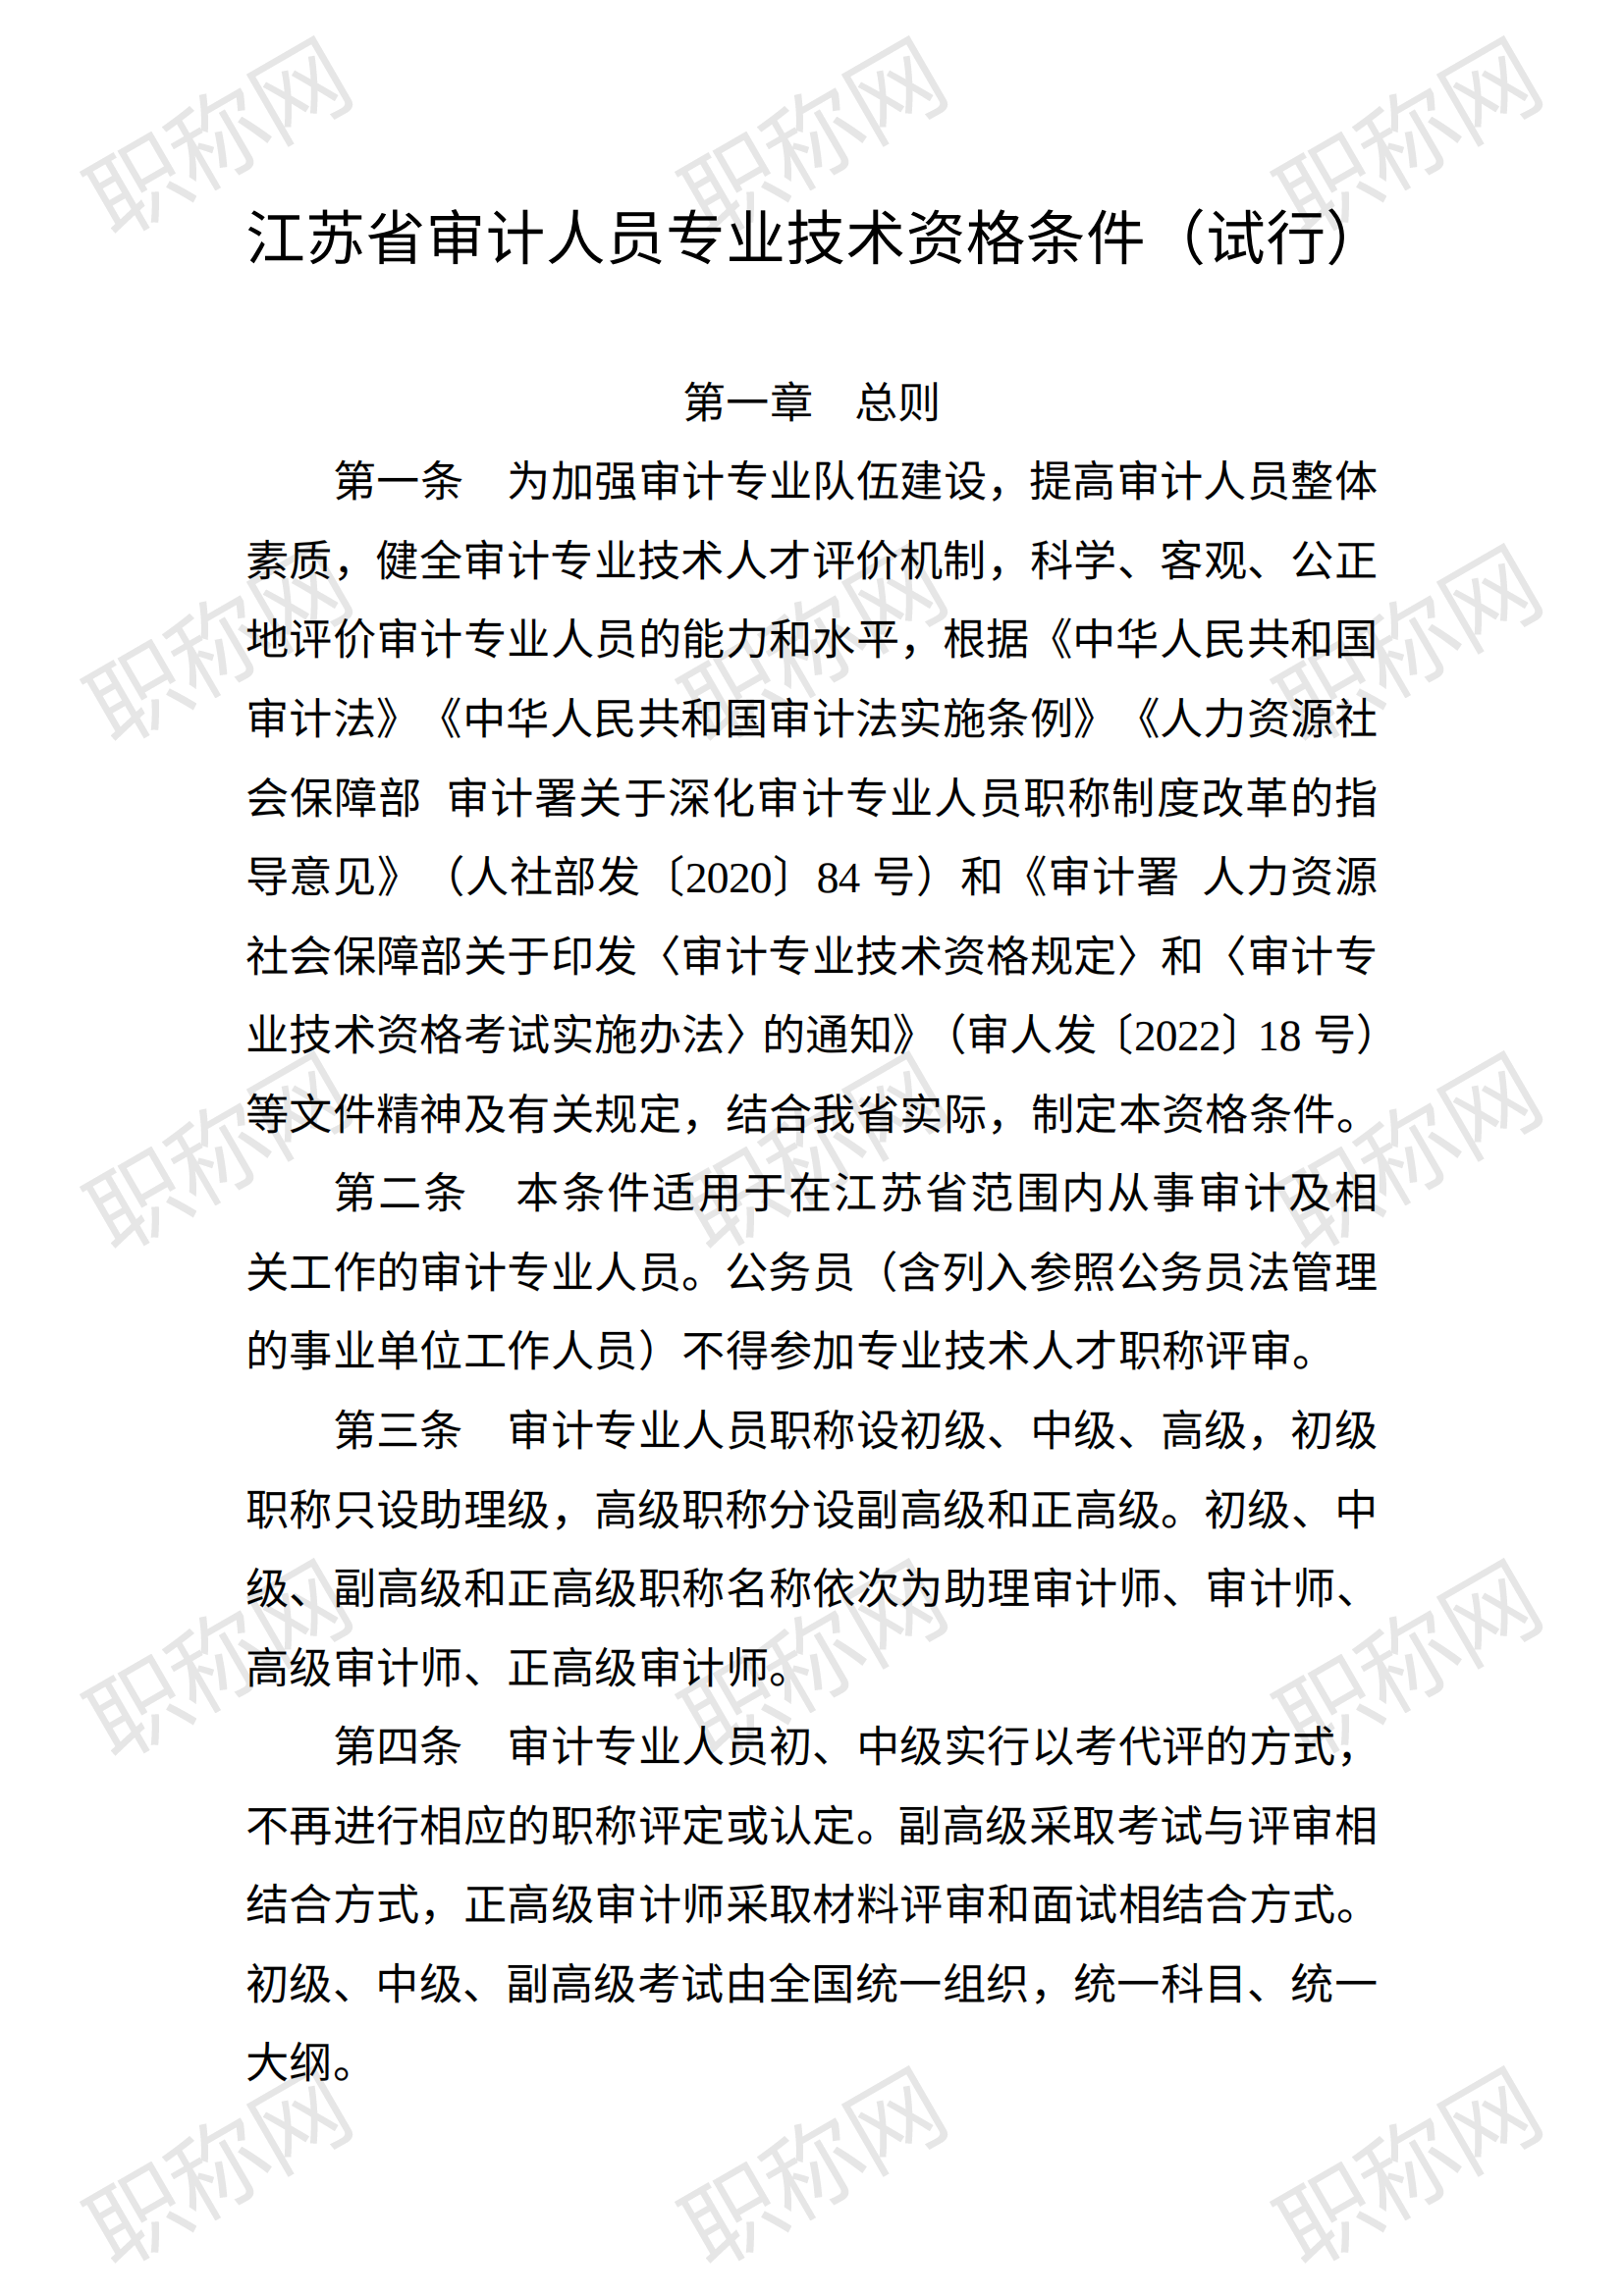 关于印发《江苏省审计人员专业技术资格条件（试行）》的通知_00.png